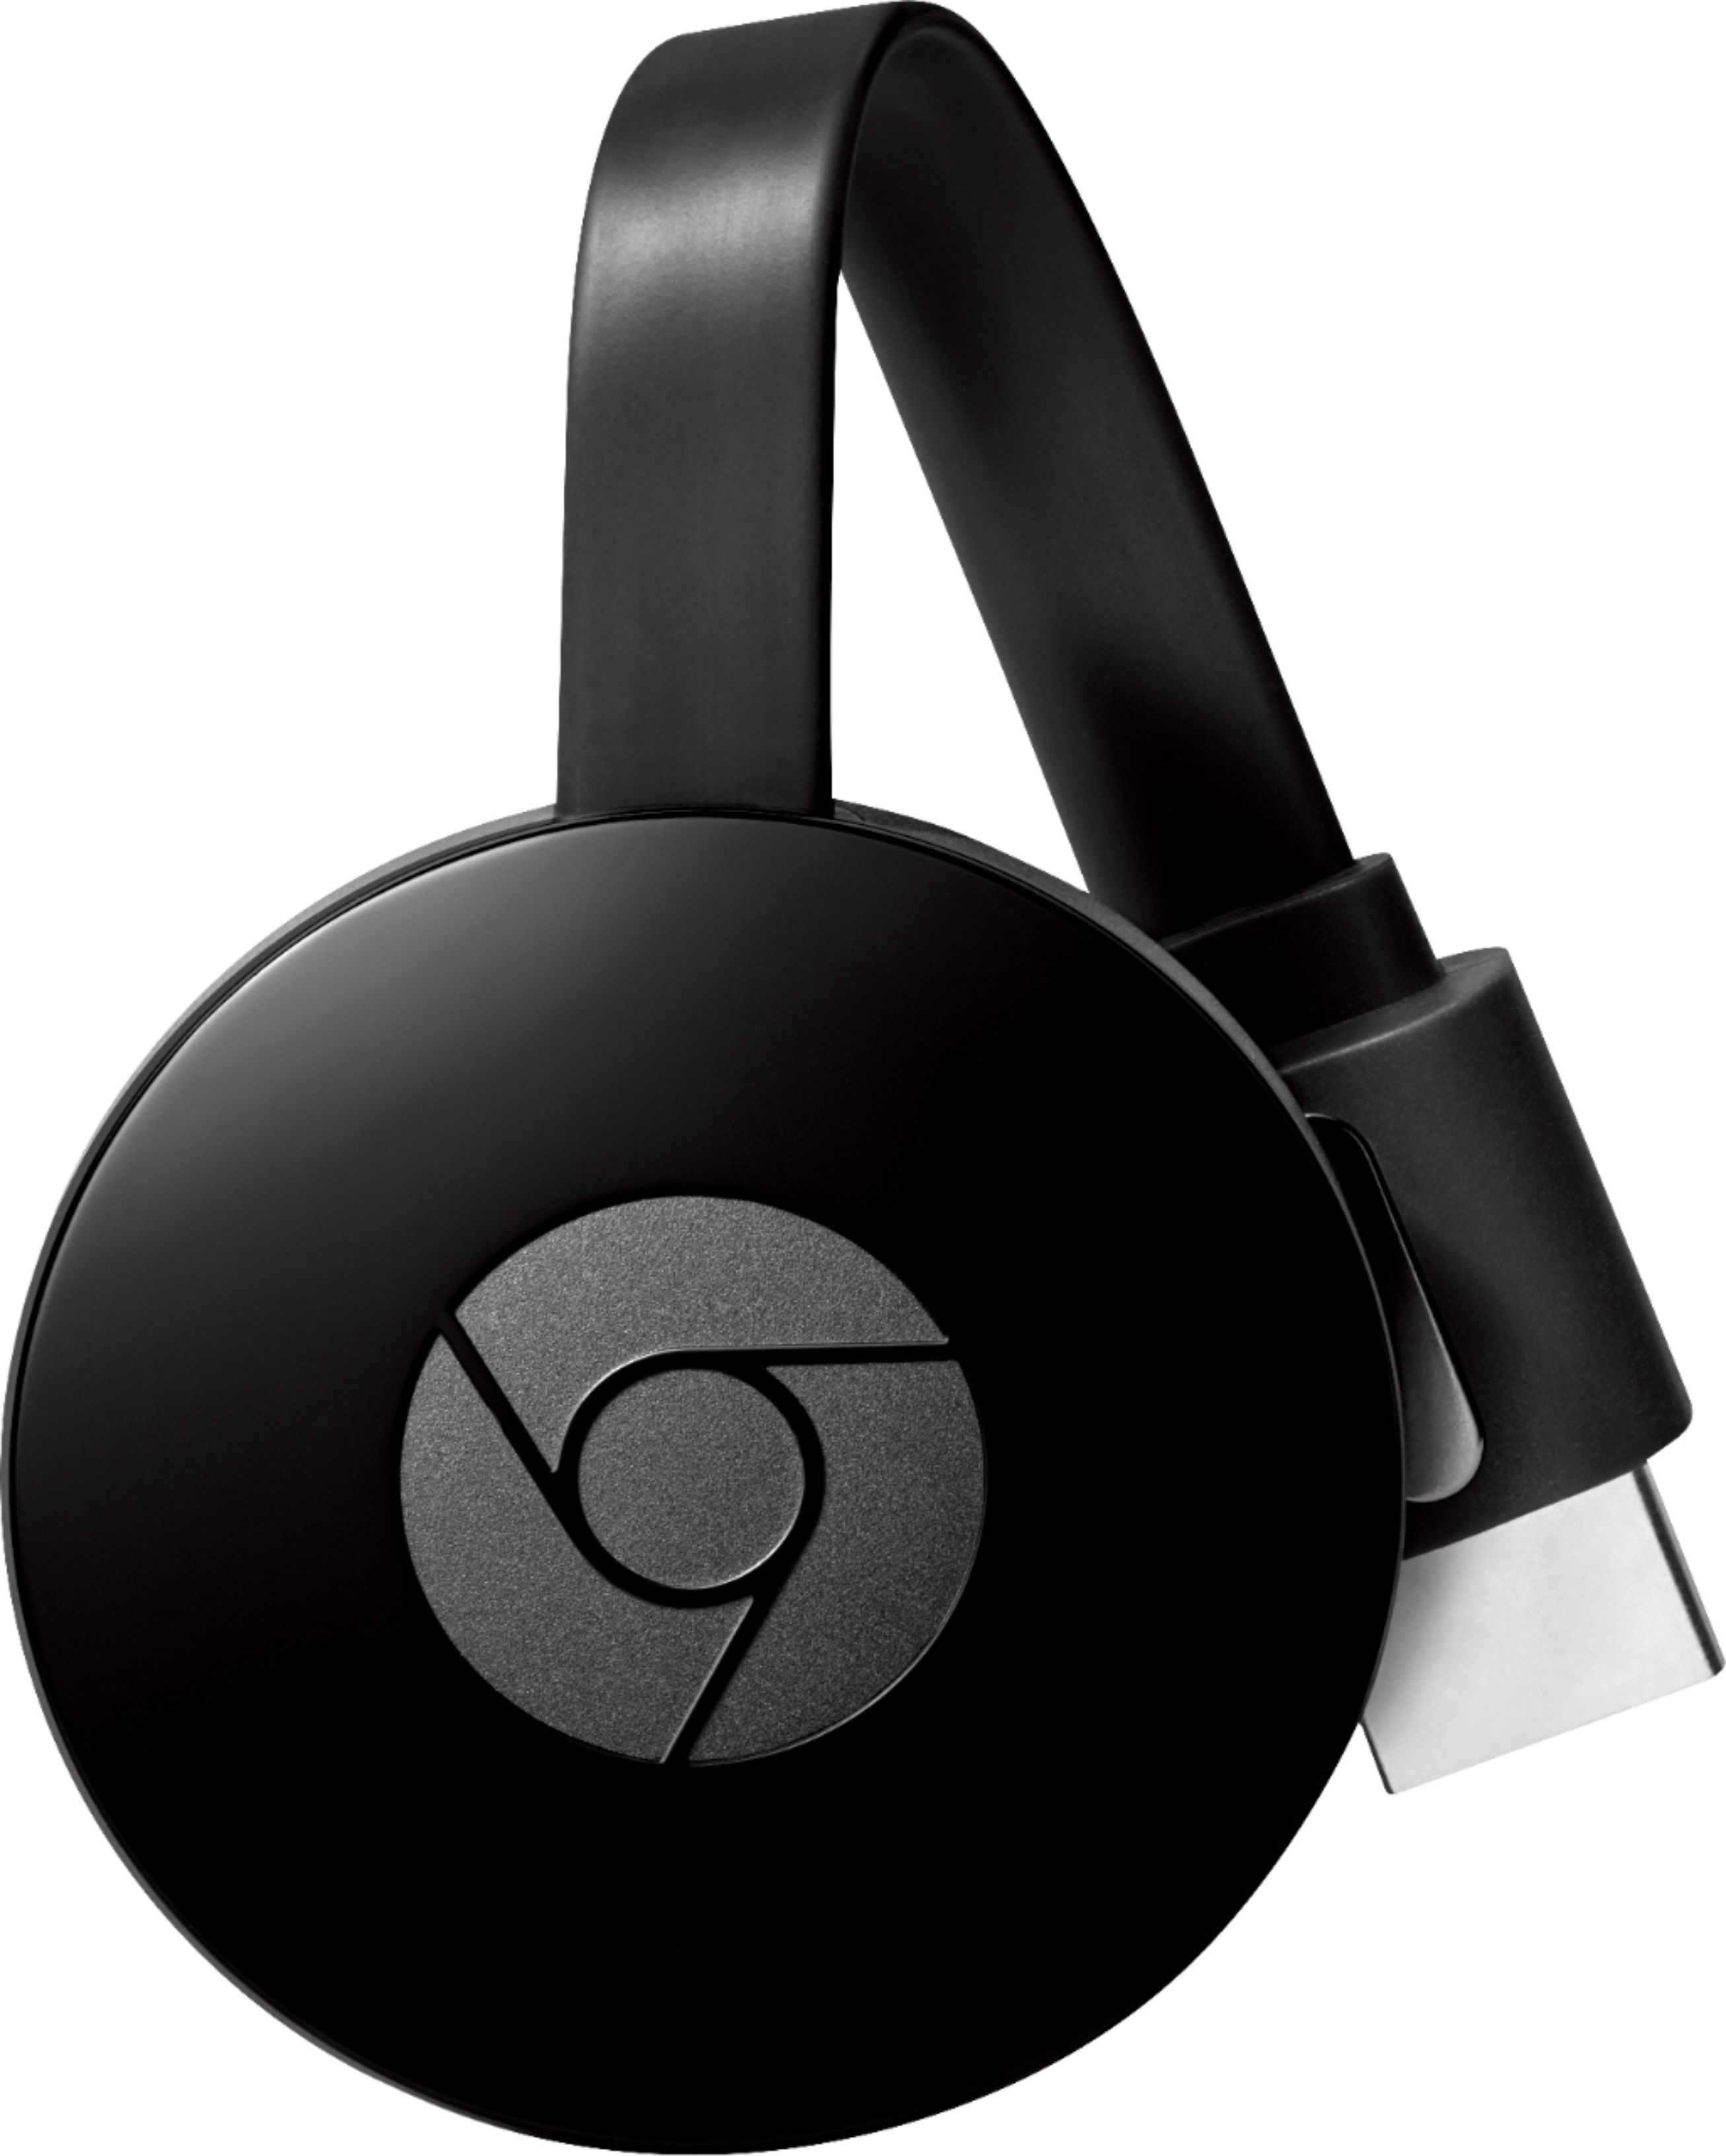 Google Chromecast Black - Best Buy